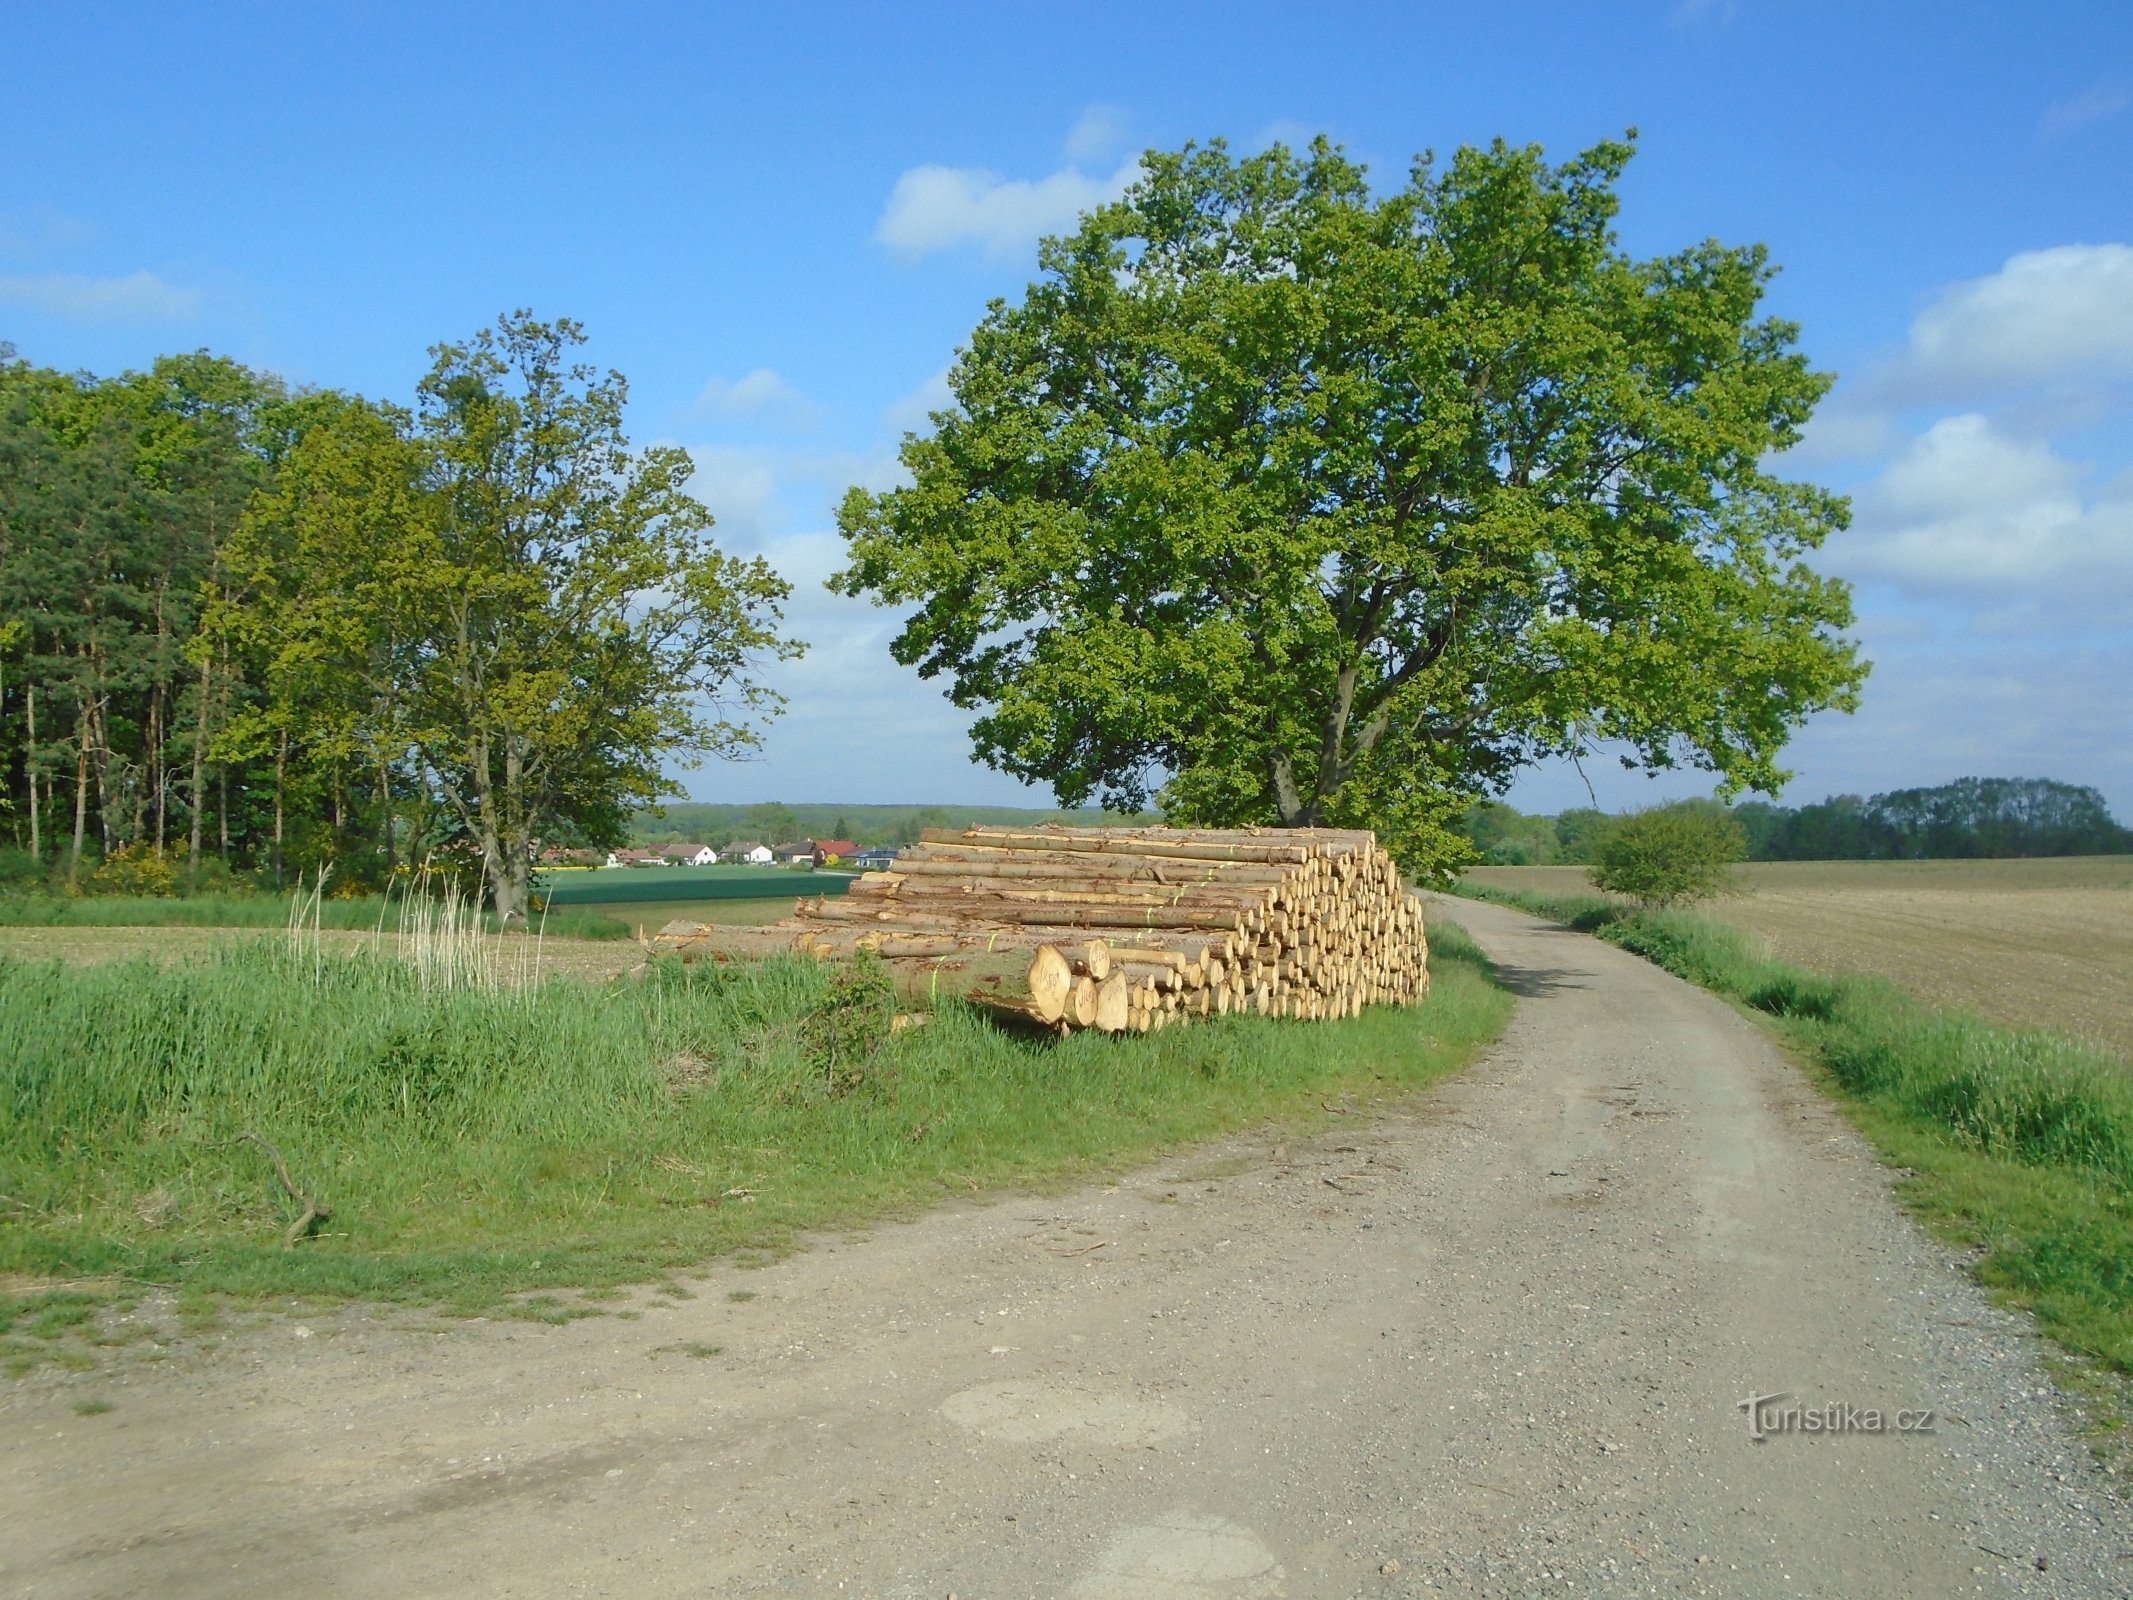 从 Radostov 到 Kunčice 的道路